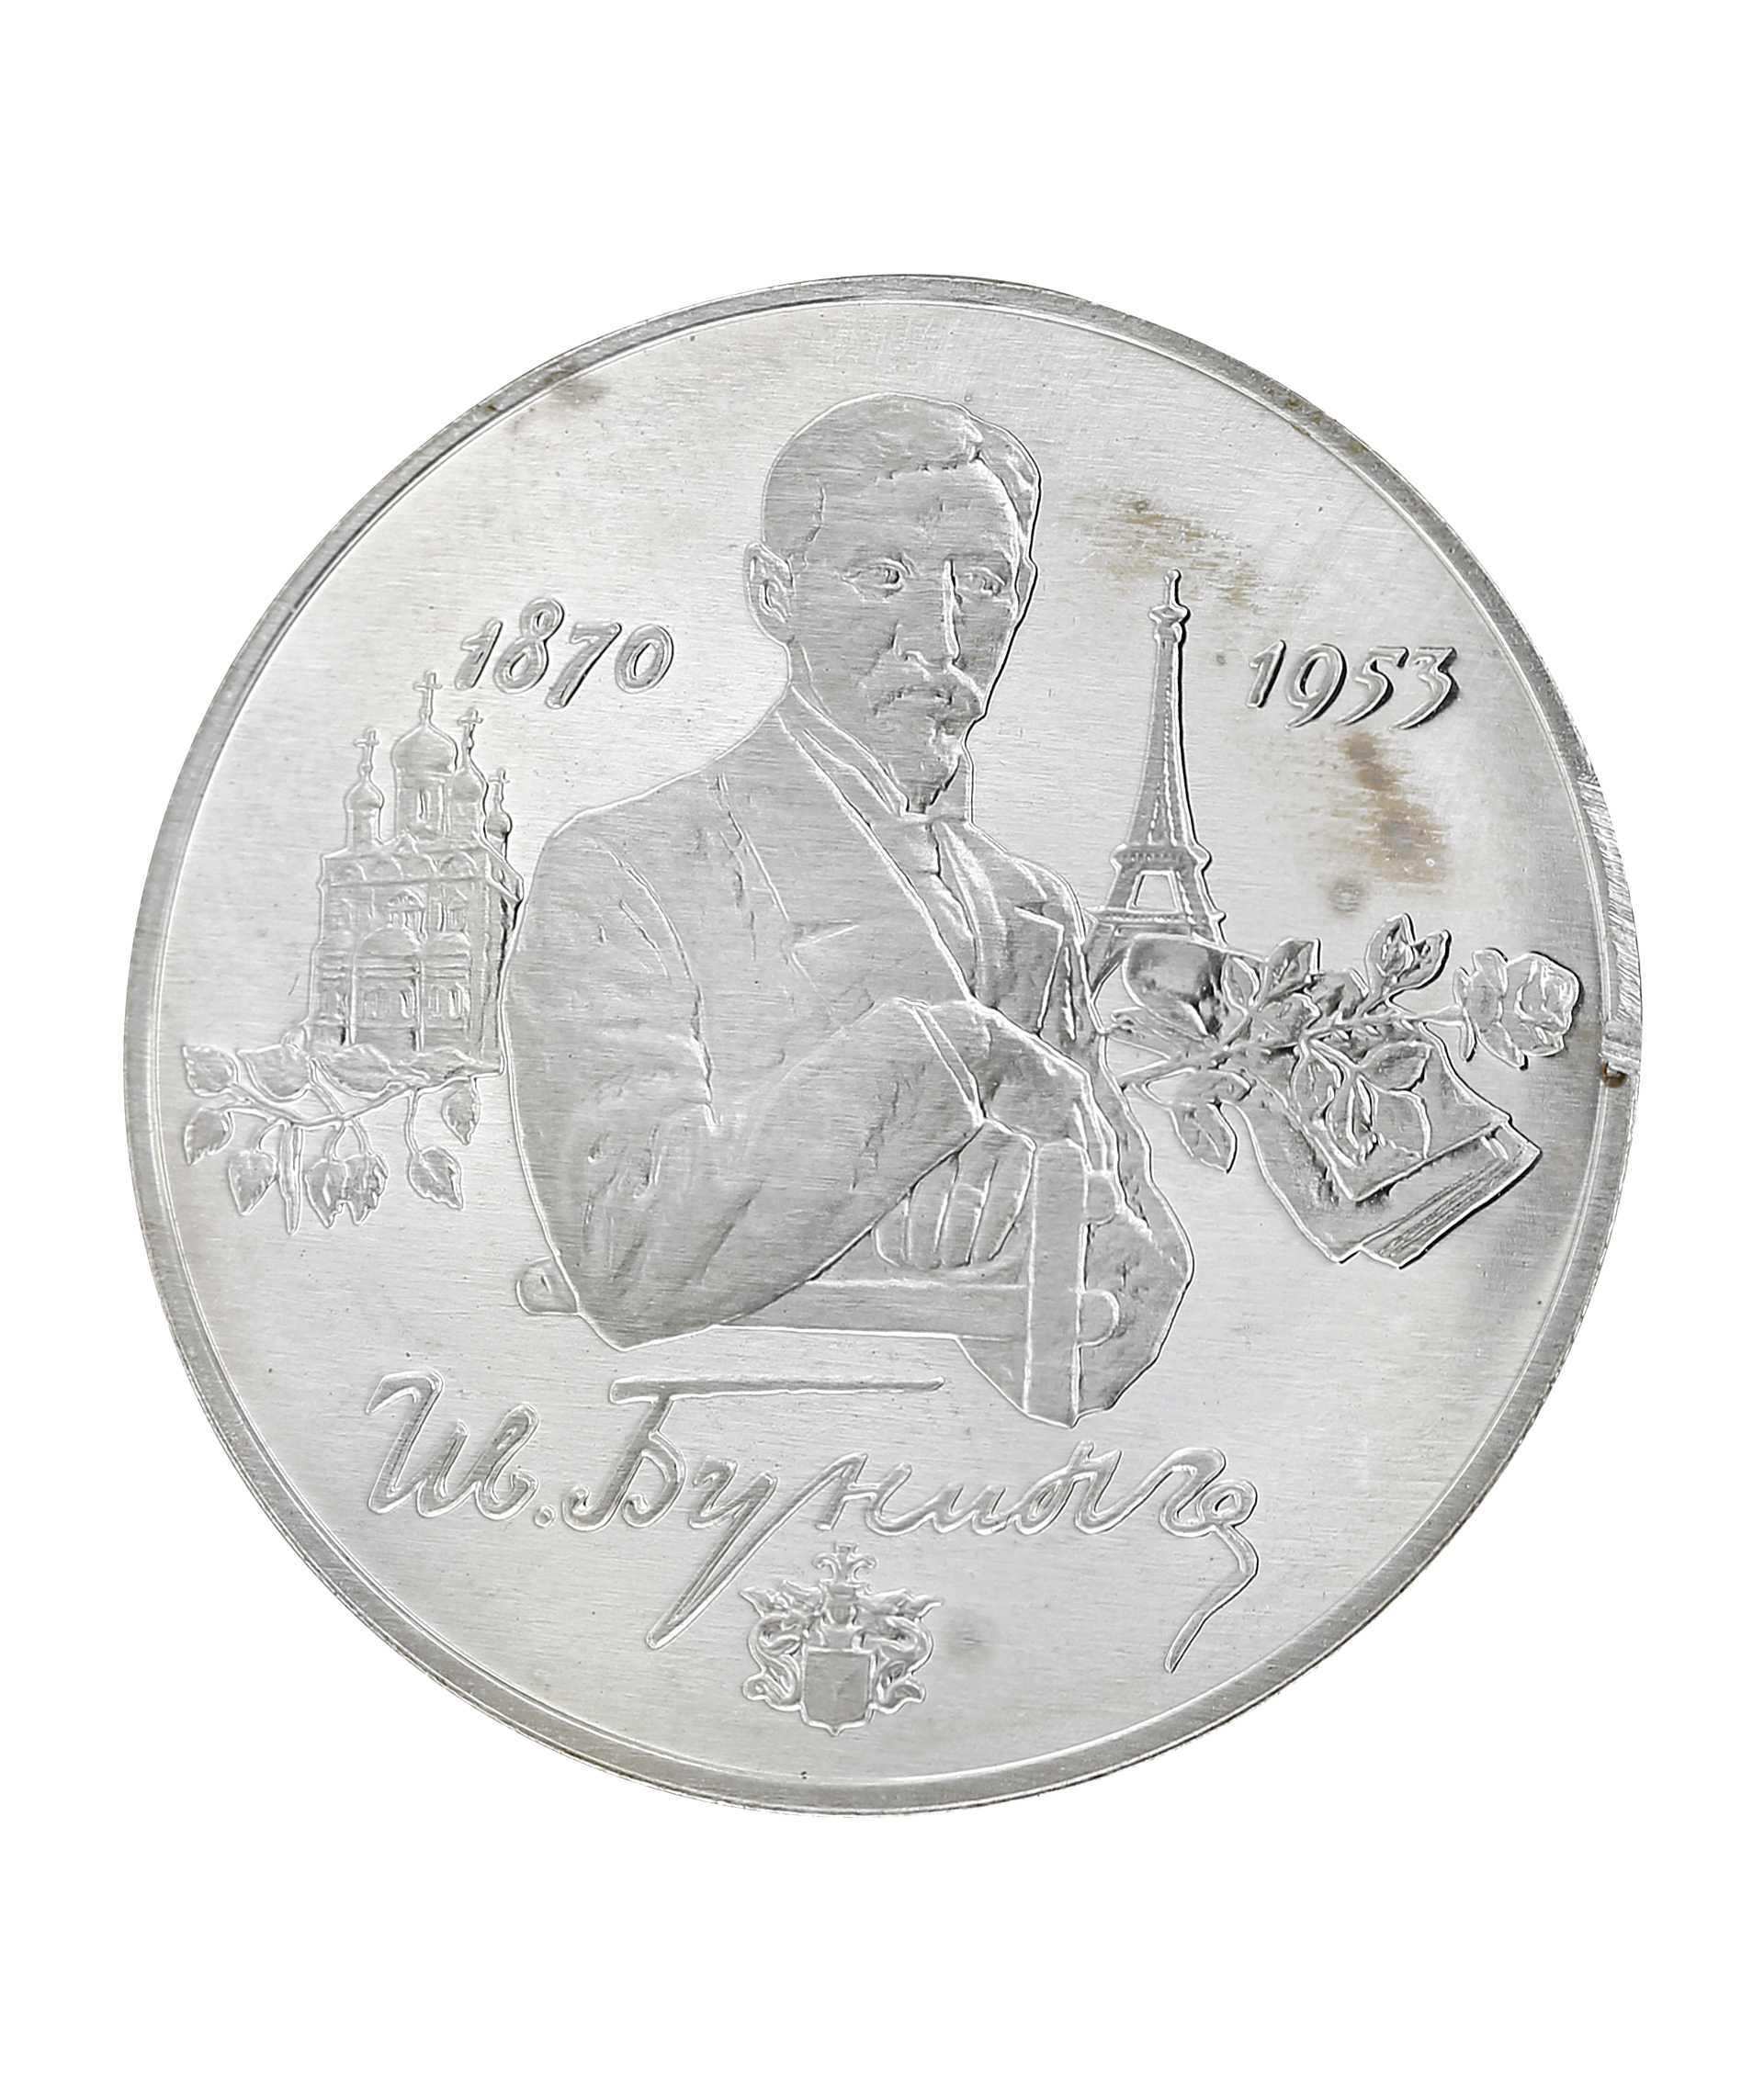 Серебряные монеты проба. Монеты пробы для серебра. Проба на серебряной монете. Серебряная Монетка 2 рубля. Монета серебро Красносельский.